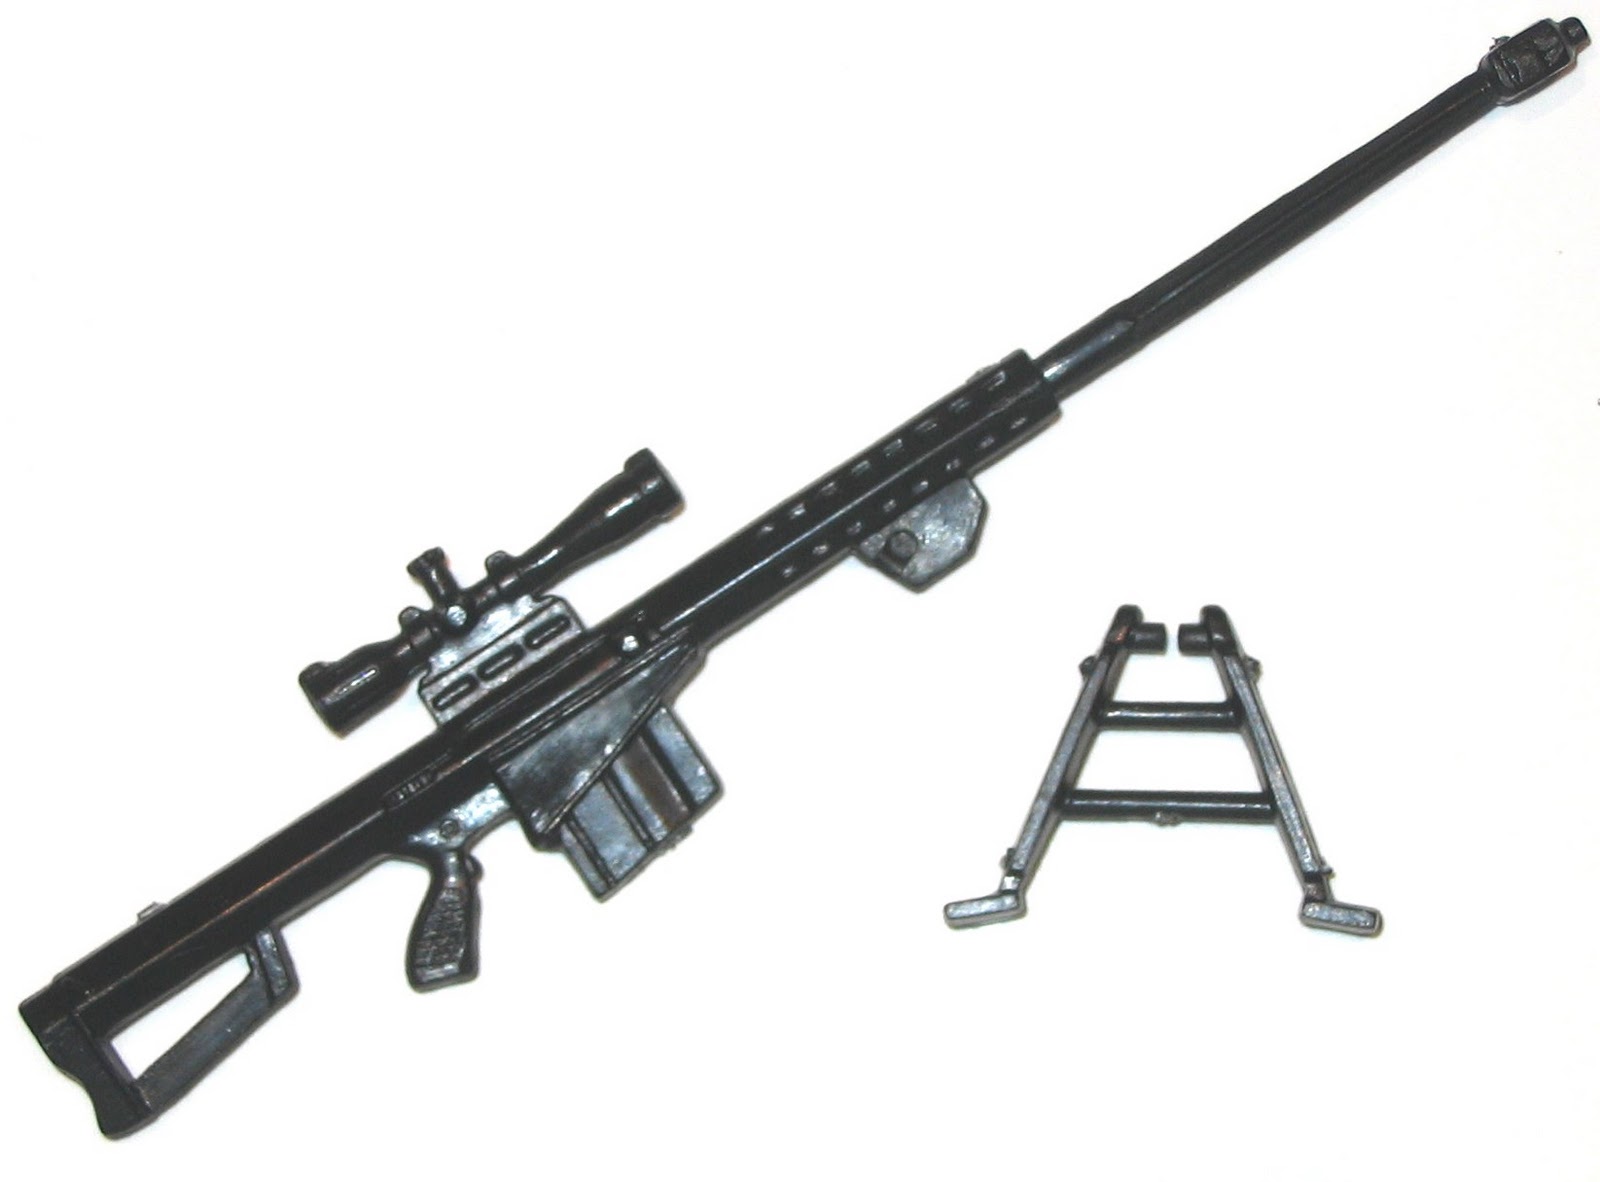 Modern Sniper Rifles Wallpapers | Guns Wallpapers | Techno Park